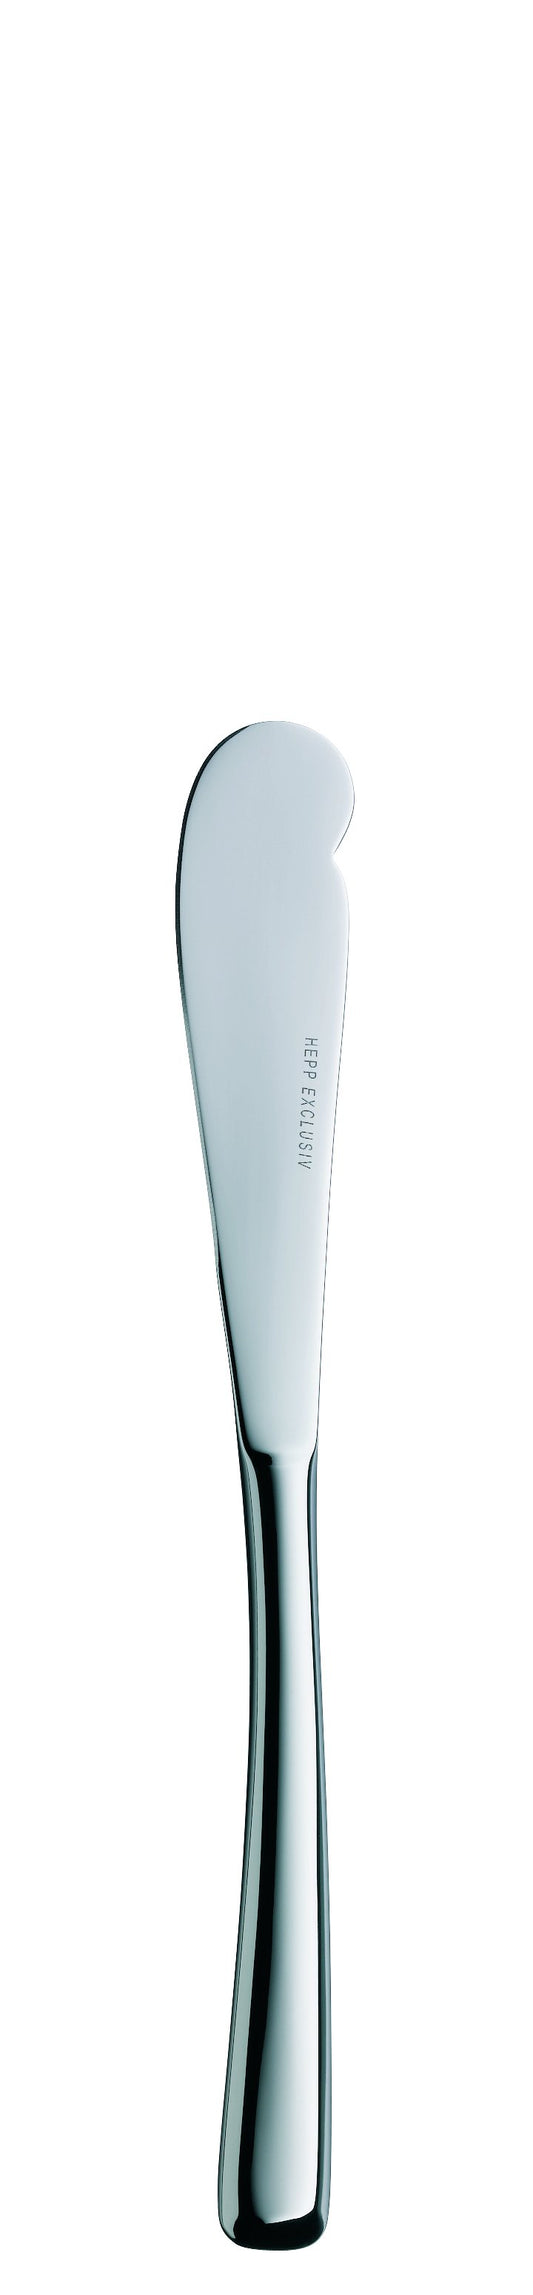 Butter knife MB MEDAN 170mm